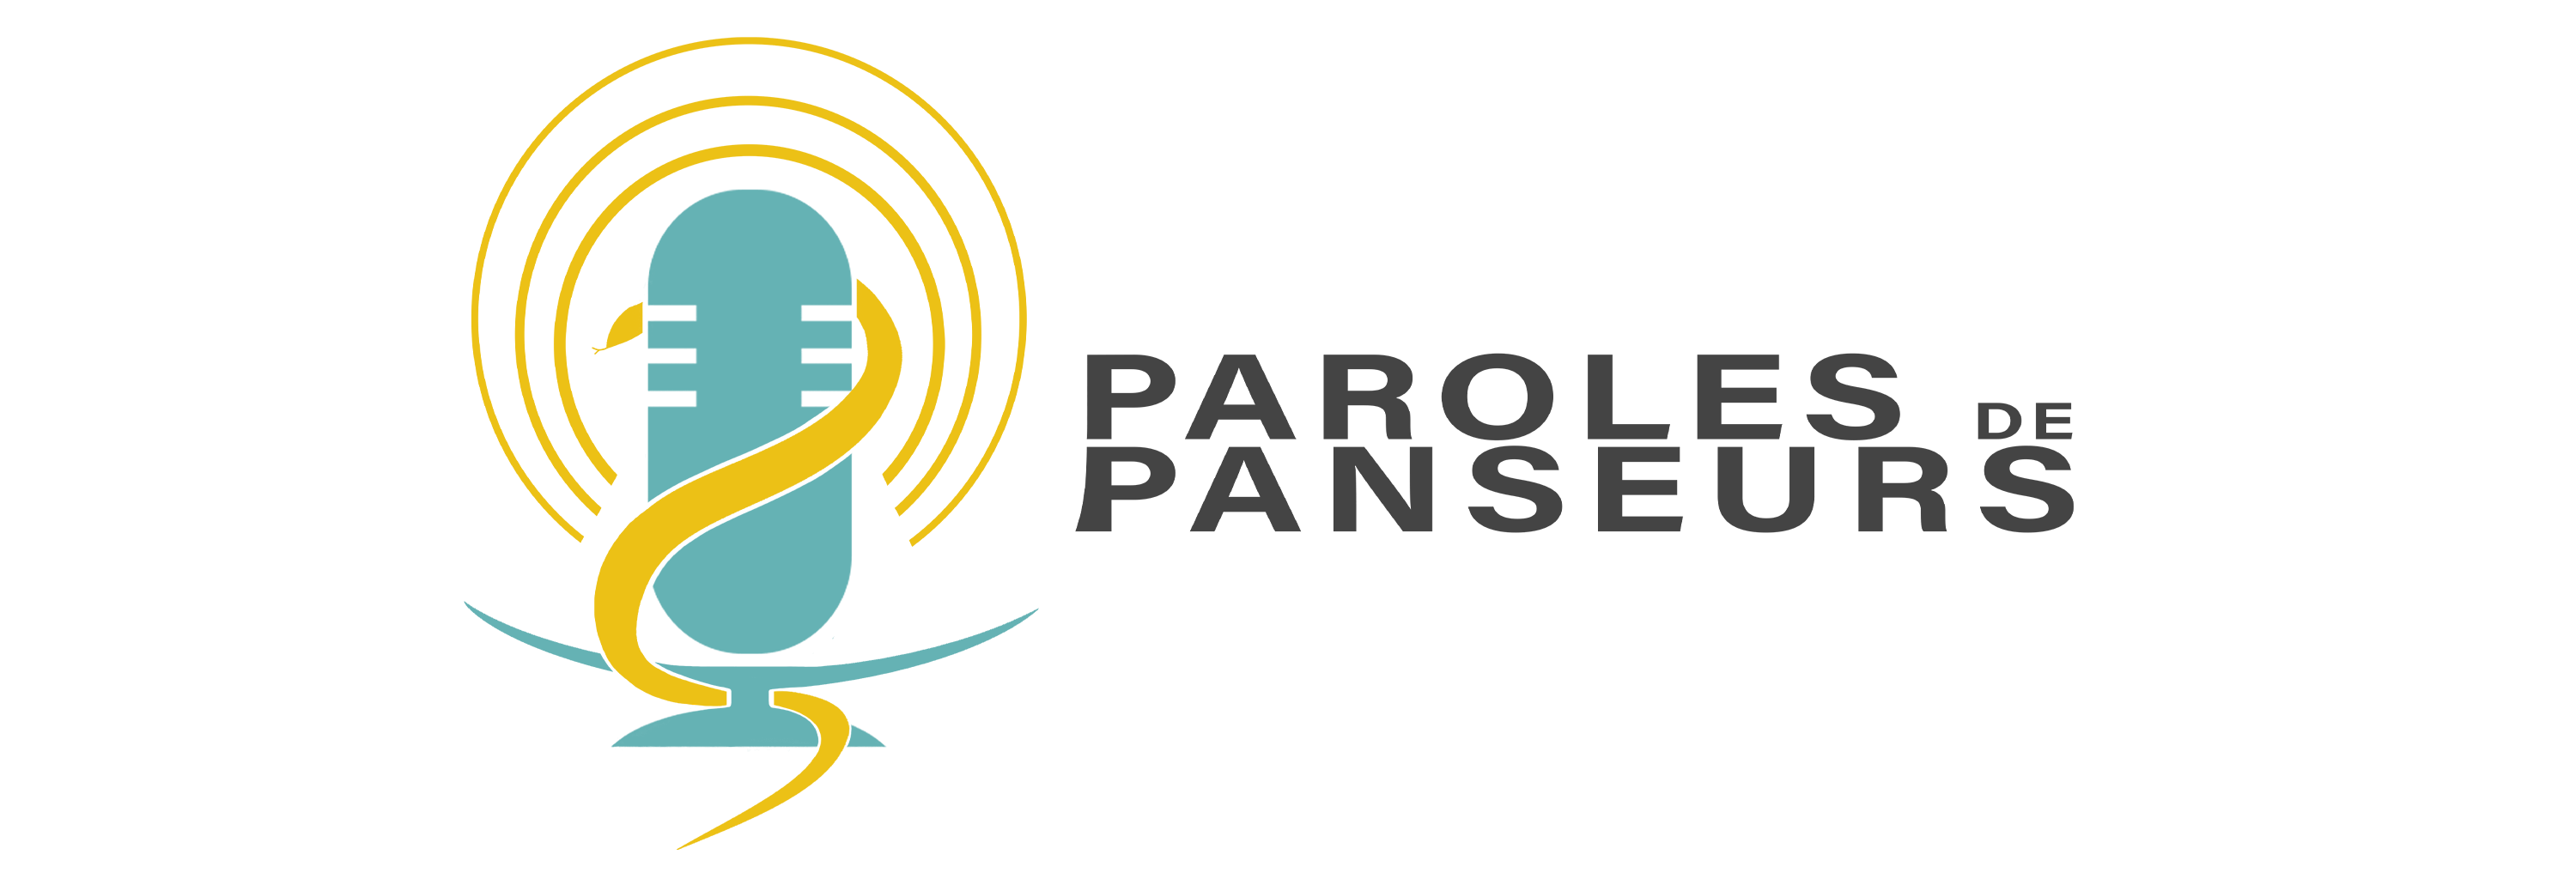 Paroles de Panseurs Logo